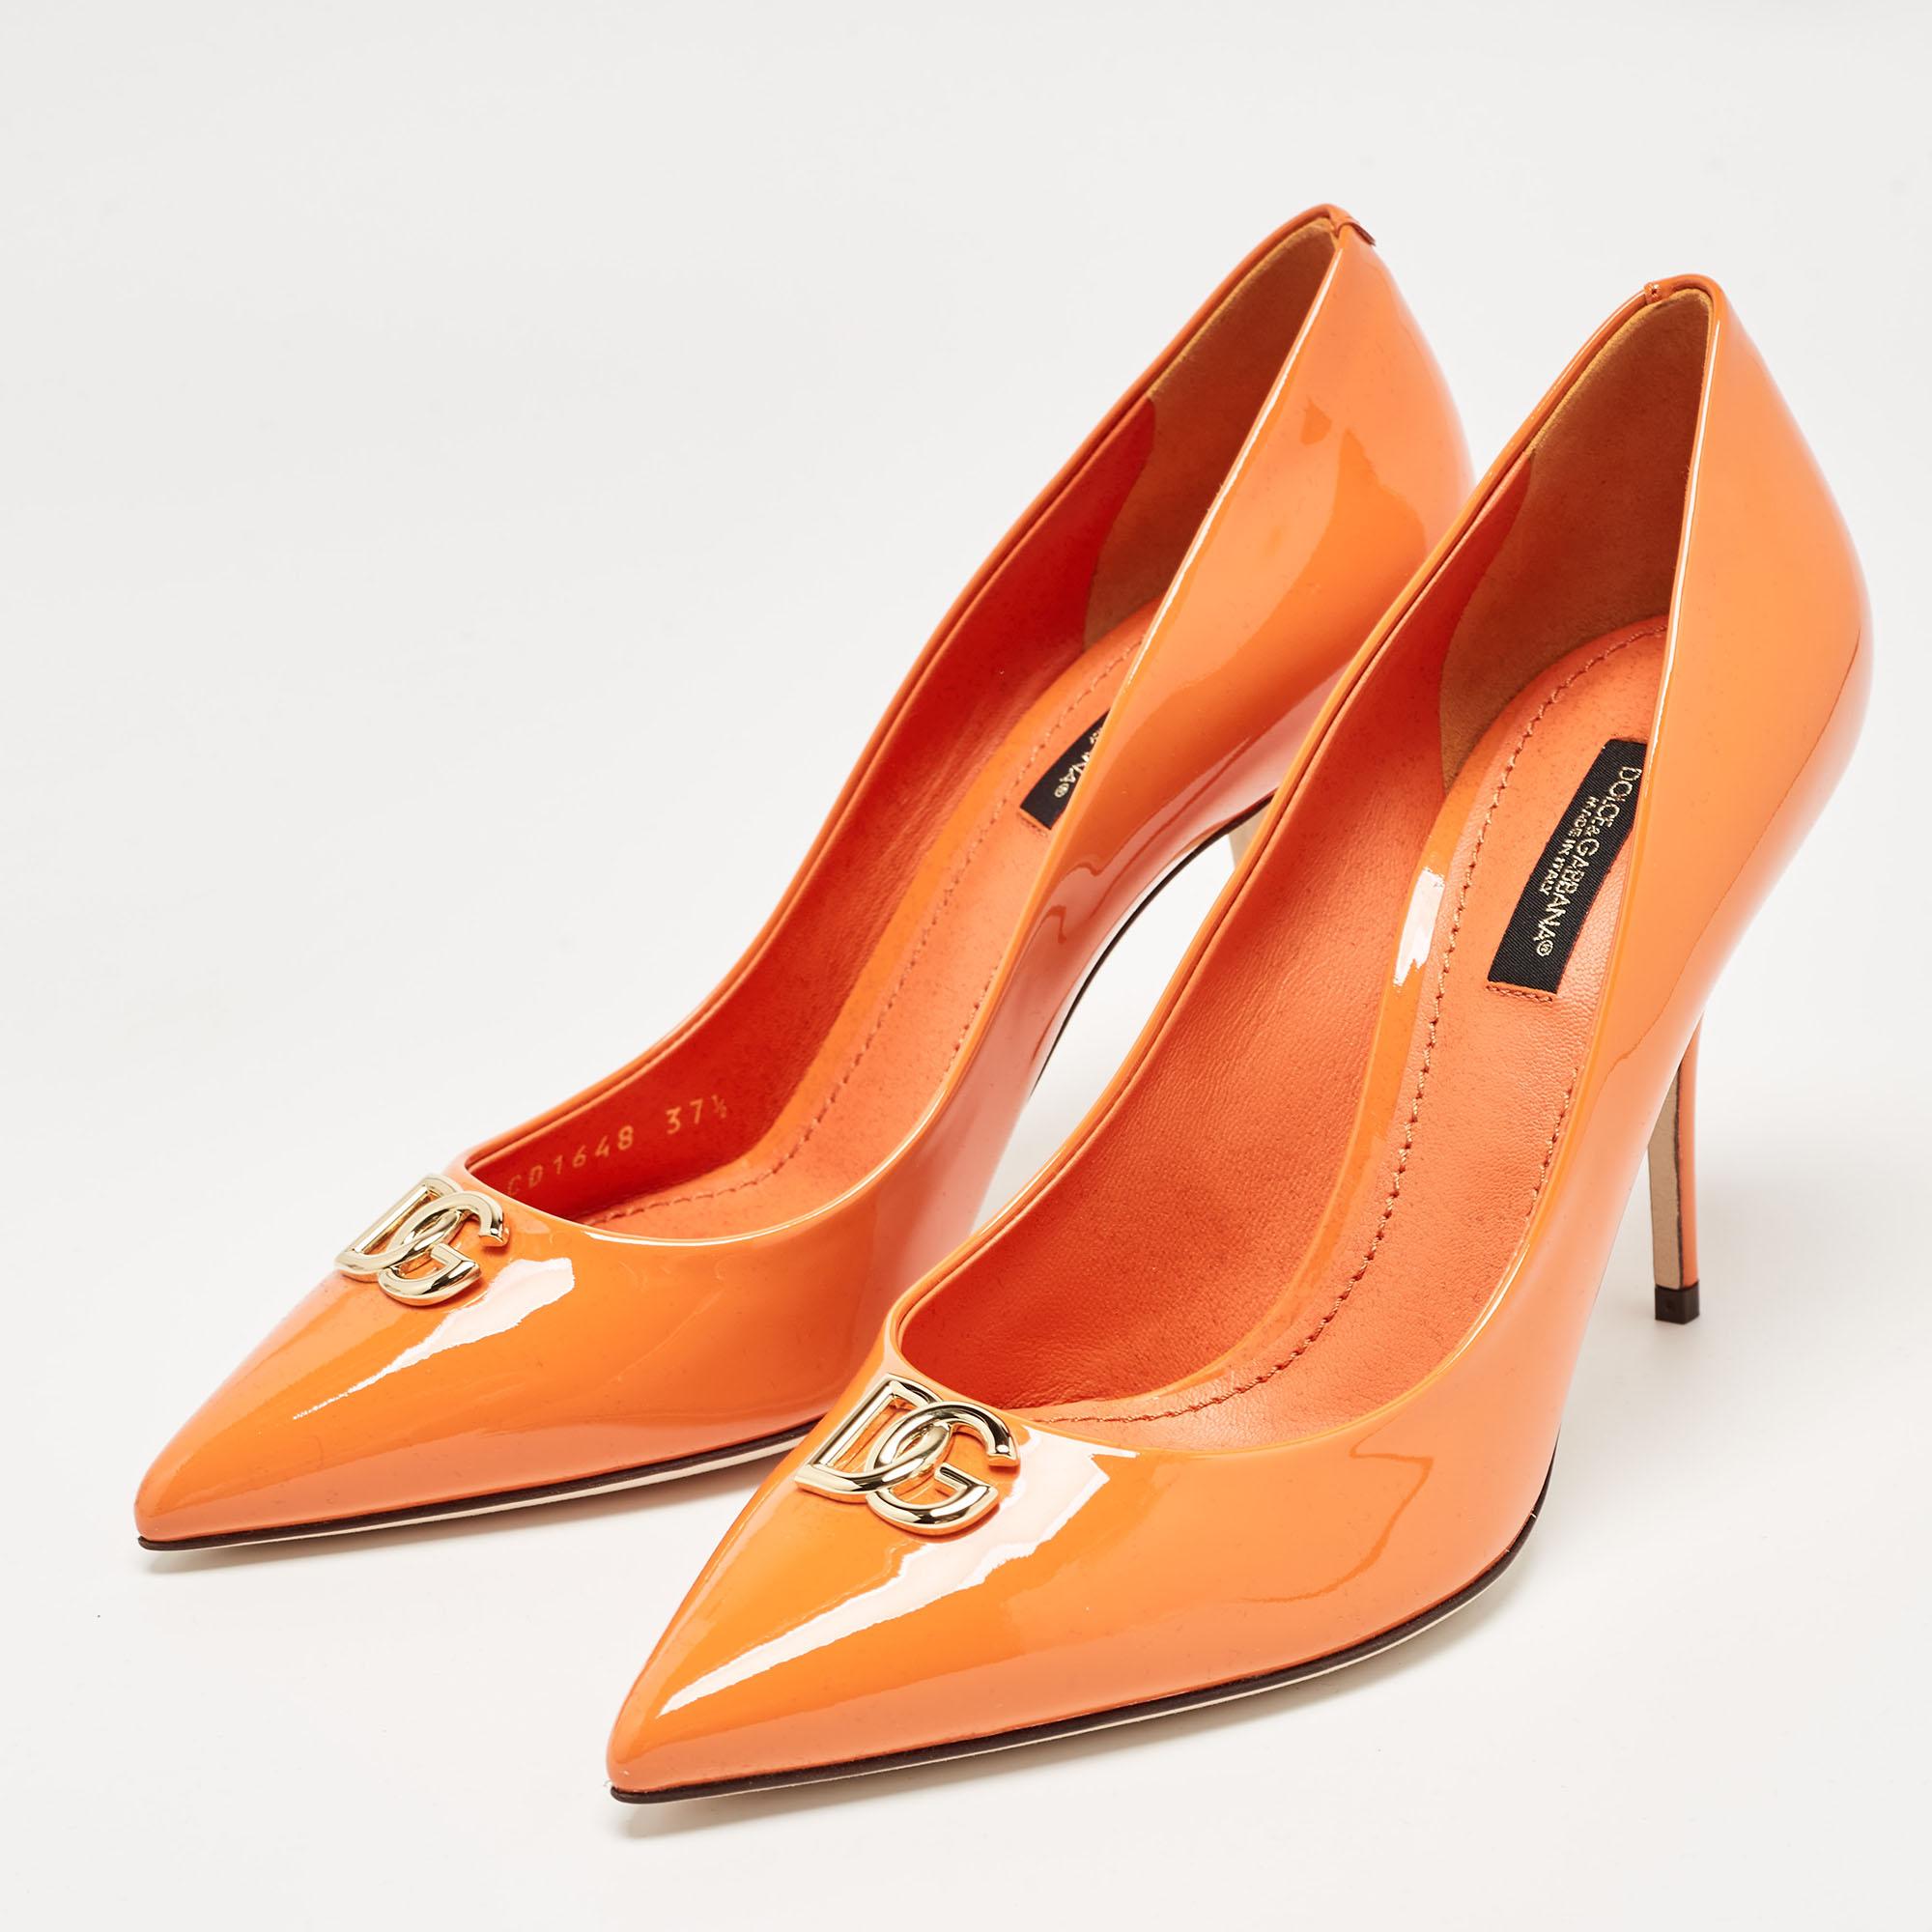 Dolce & Gabbana Orange Patent Leather DG Buckle Pumps Size 37.5 5